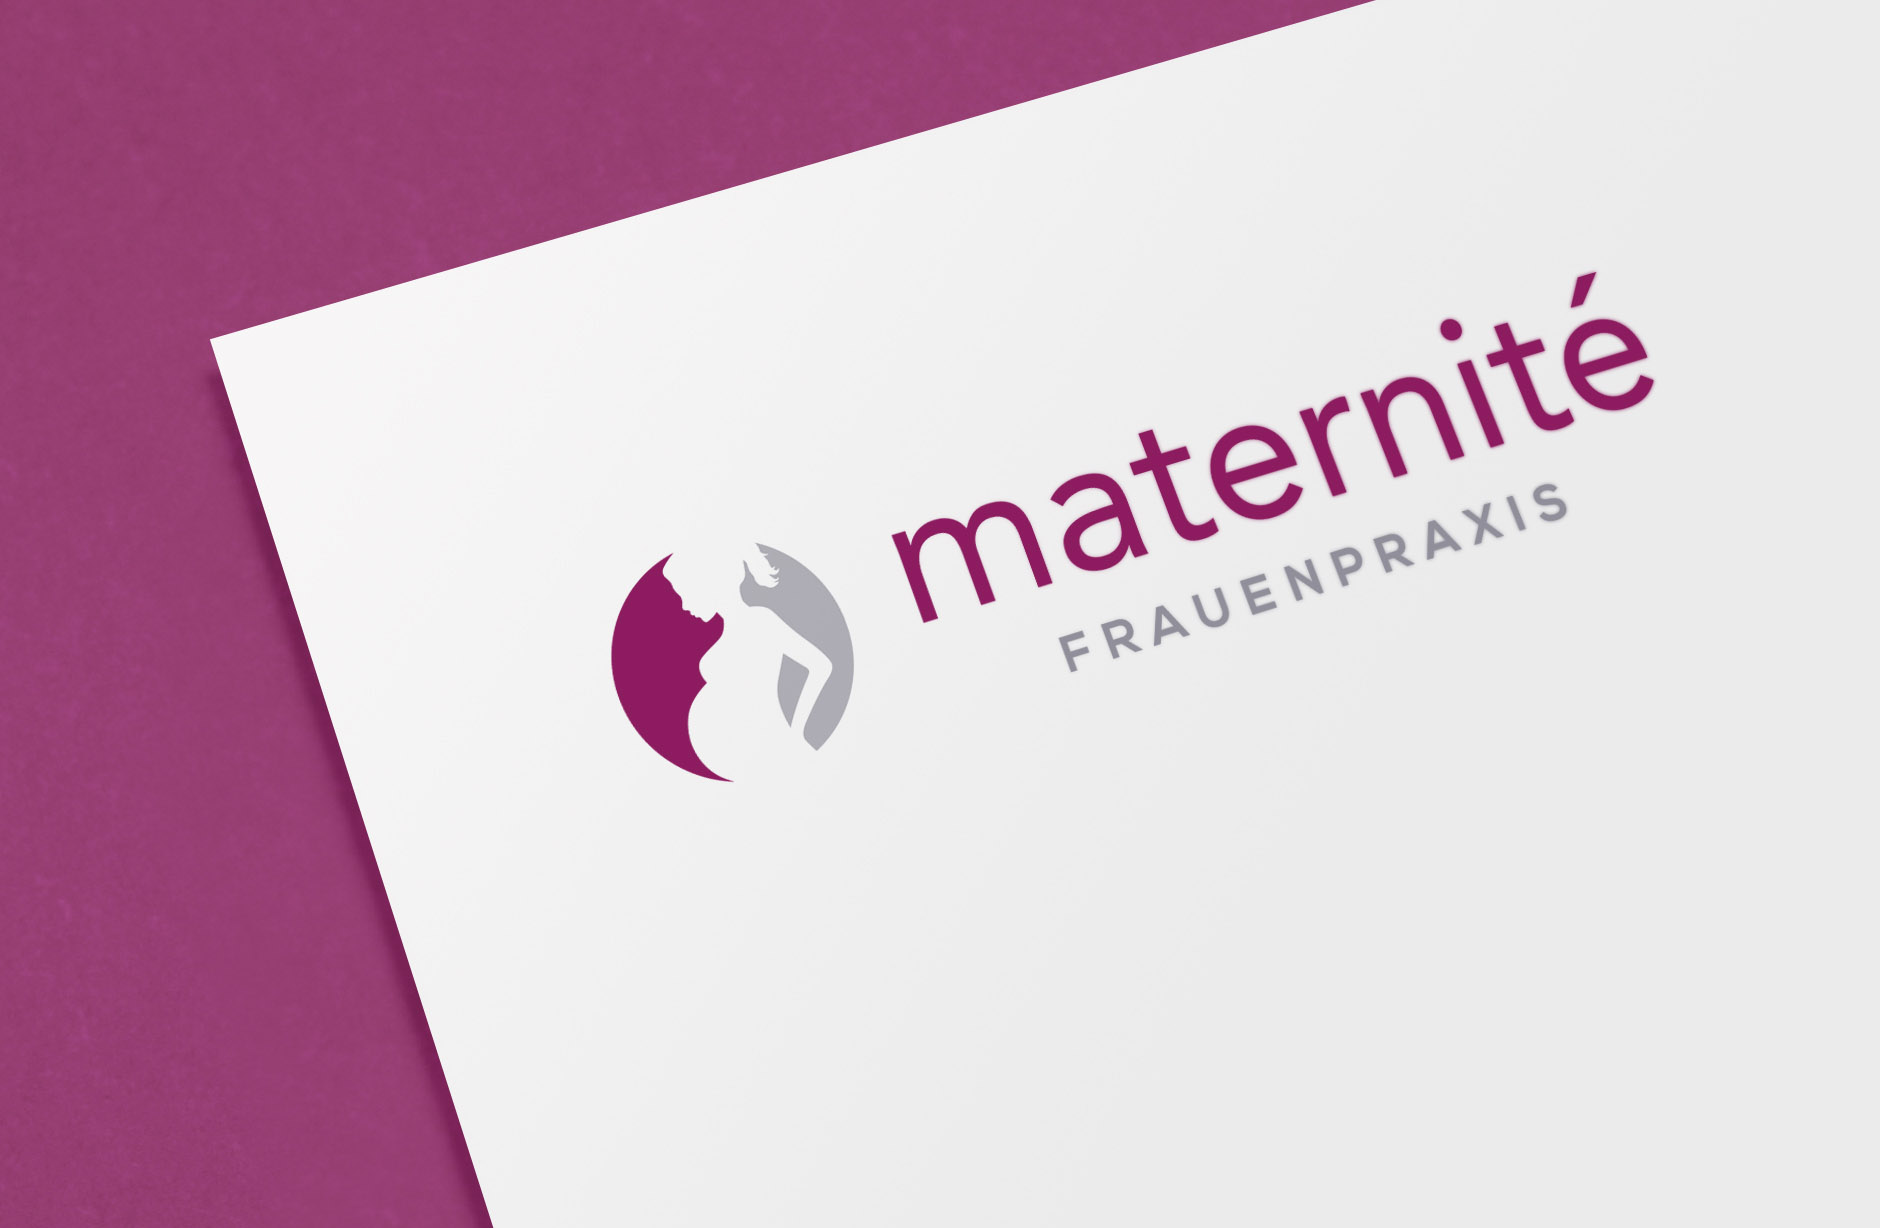 Frauenpraxis Maternité Logo – Newsign GmbH